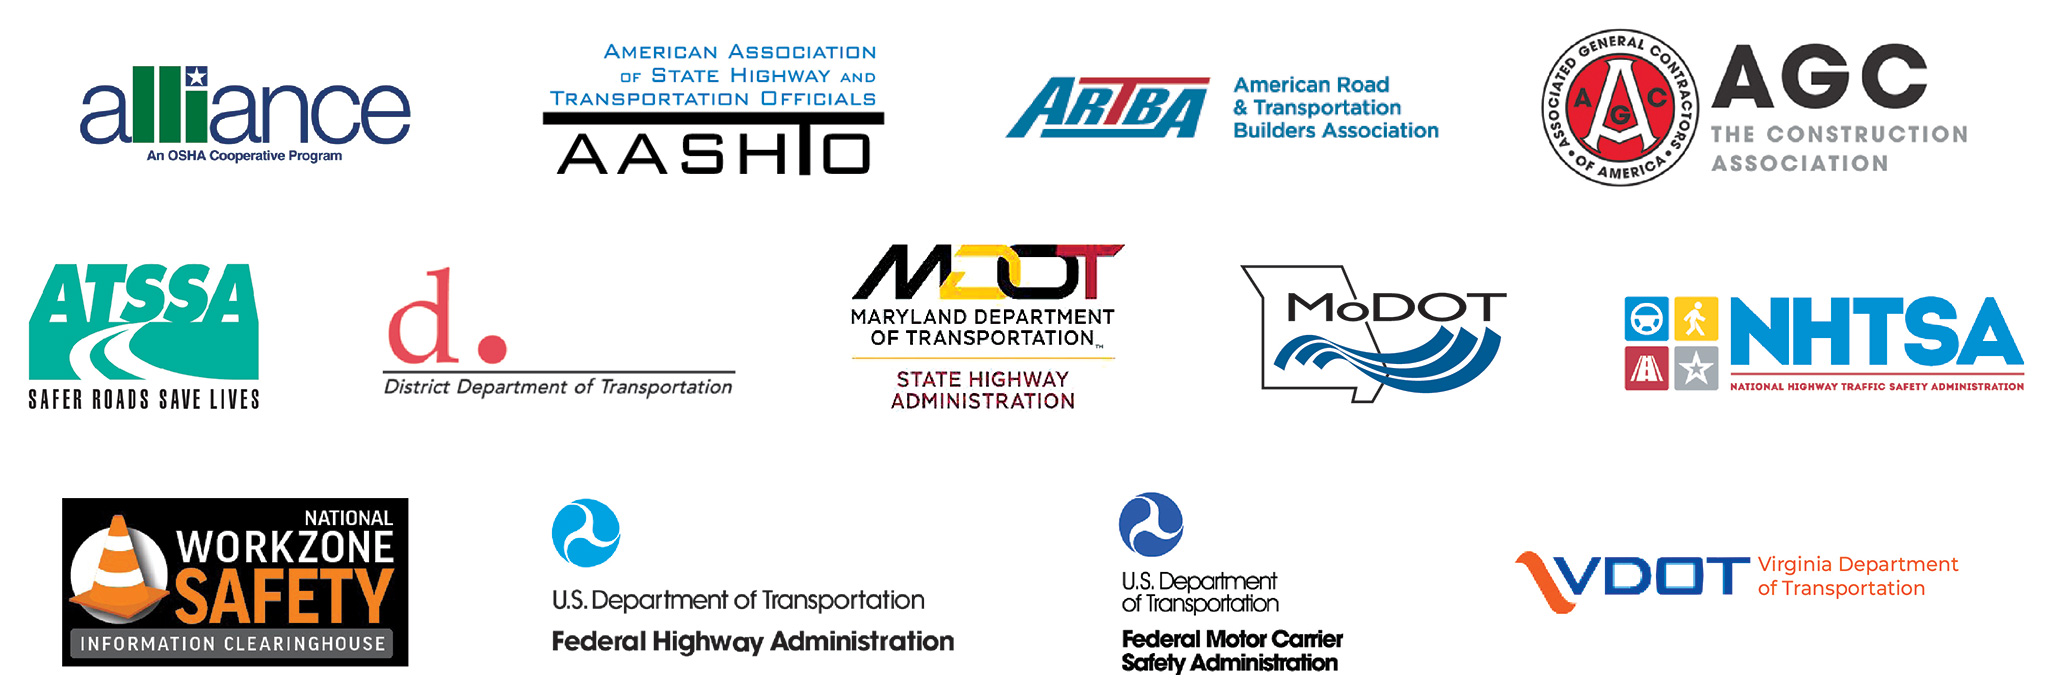 logos of key sponsors of National Workzone Awareness Week